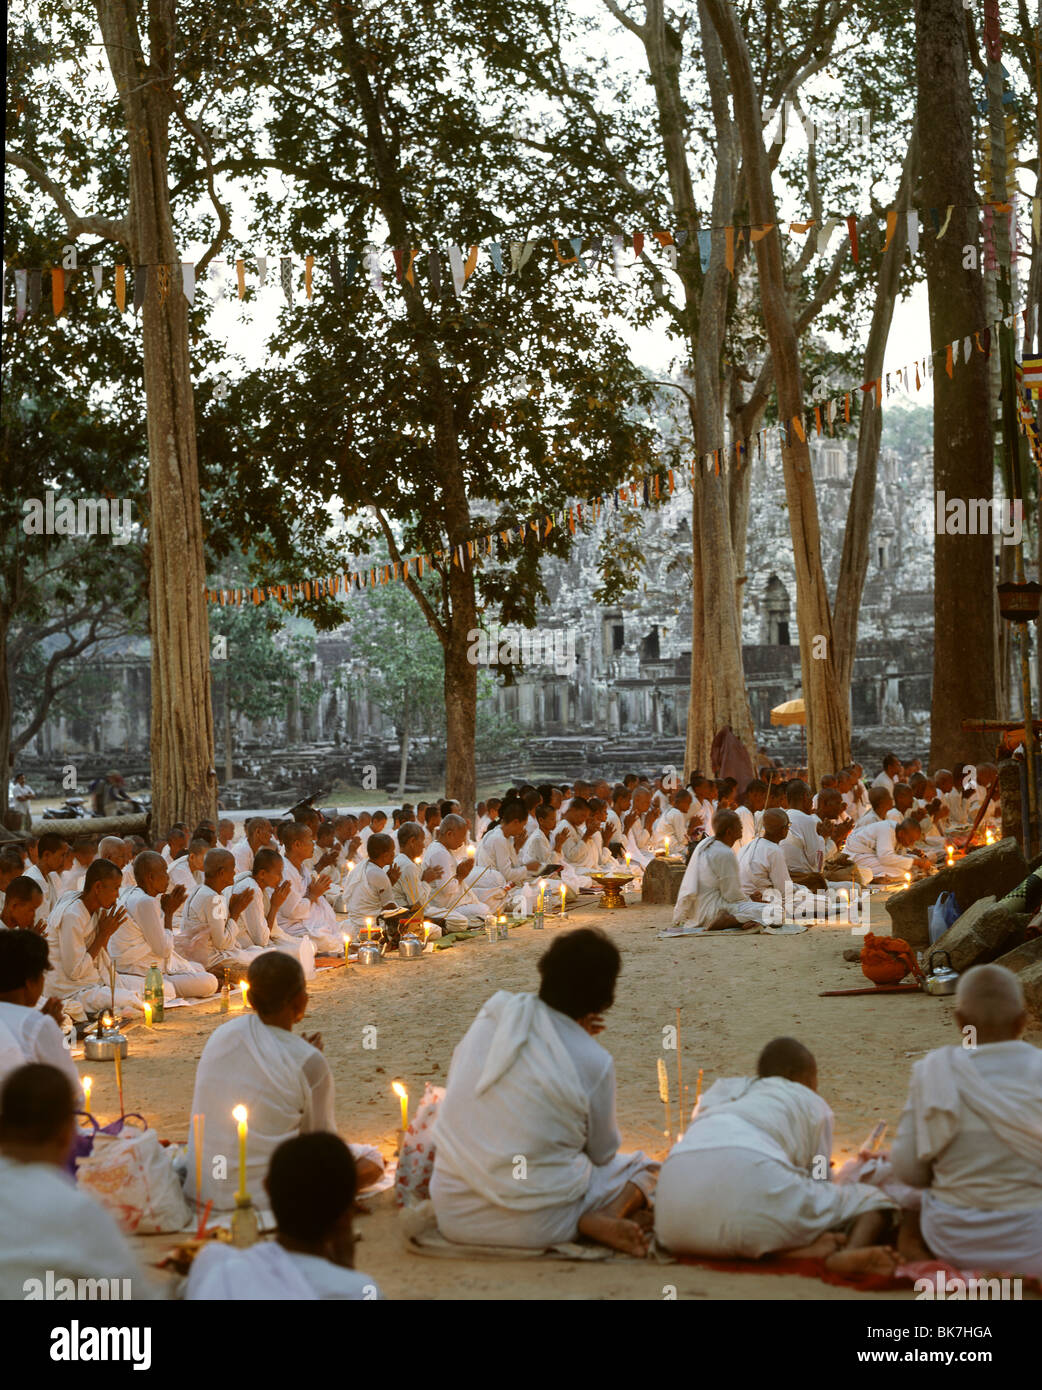 Des religieuses en prière au Bayon, Angkor Thom, Angkor, Site du patrimoine mondial de l'UNESCO, le Cambodge, l'Indochine, l'Asie du Sud-Est, Asie&# 10, Banque D'Images